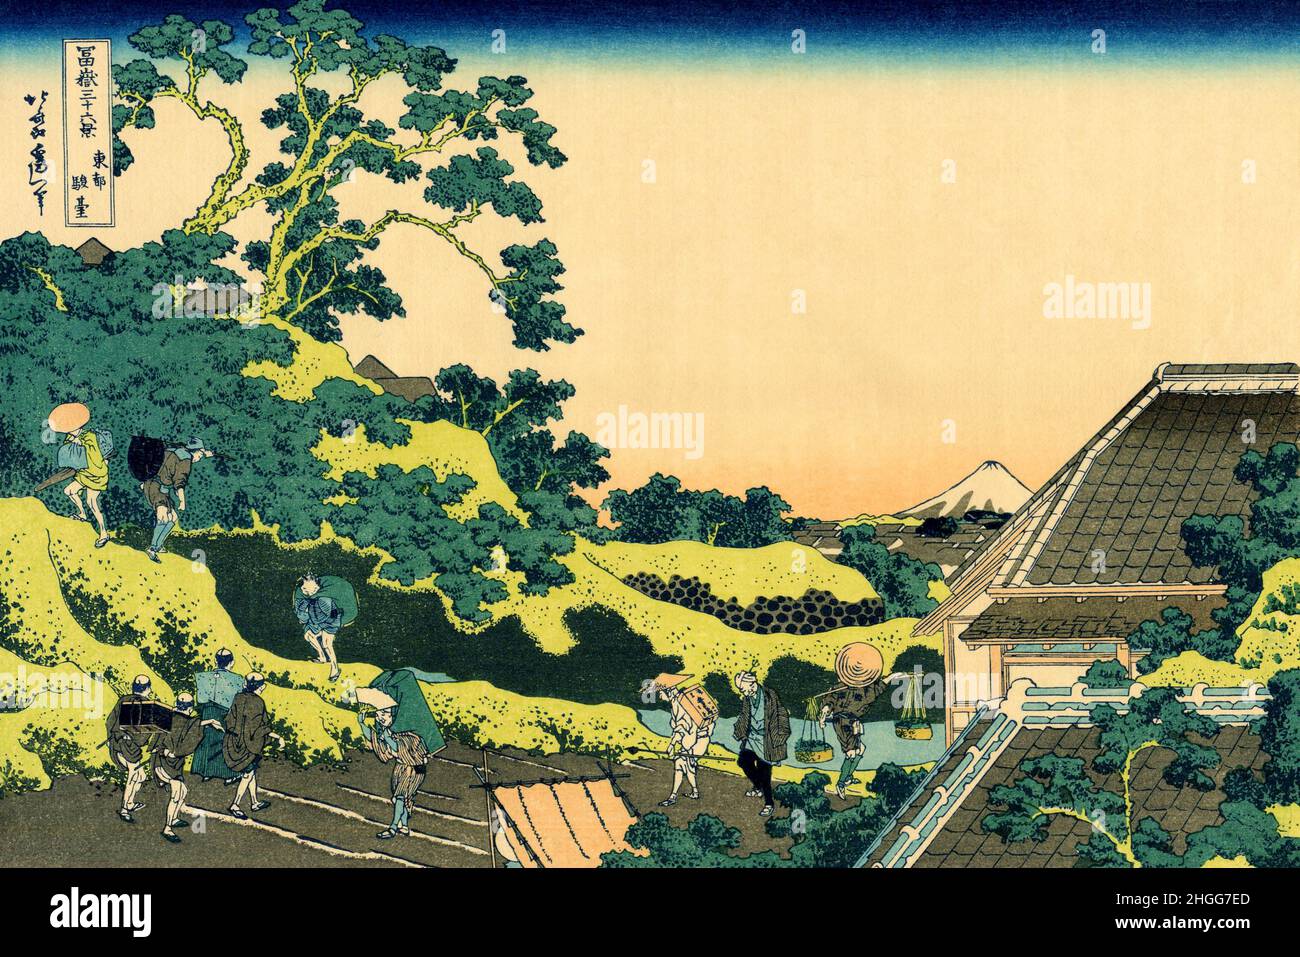 Japón: «Sundai, Edo», también conocido como «Fuji visto desde el paso de Mishima». Ukiyo-e estampado de bloques de madera de la serie 'Treinta y seis vistas del Monte Fuji' de Katsushika Hokusai (31 de octubre de 1760 - 10 de mayo de 1849), c. 1830. El Monte Fuji es la montaña más alta de Japón a 3.776,24 m (12.389 pies). Un estratovolcán activo que estalló por última vez en 1707–08, el Monte Fuji se encuentra a unos 100 km al suroeste de Tokio. El cono excepcionalmente simétrico del Monte Fuji es un símbolo y un icono bien conocido de Japón y se representa con frecuencia en el arte y las fotografías. Es una de las “Tres Montañas Sagradas” de Japón junto con el Monte Tate y el Monte Haku. Foto de stock